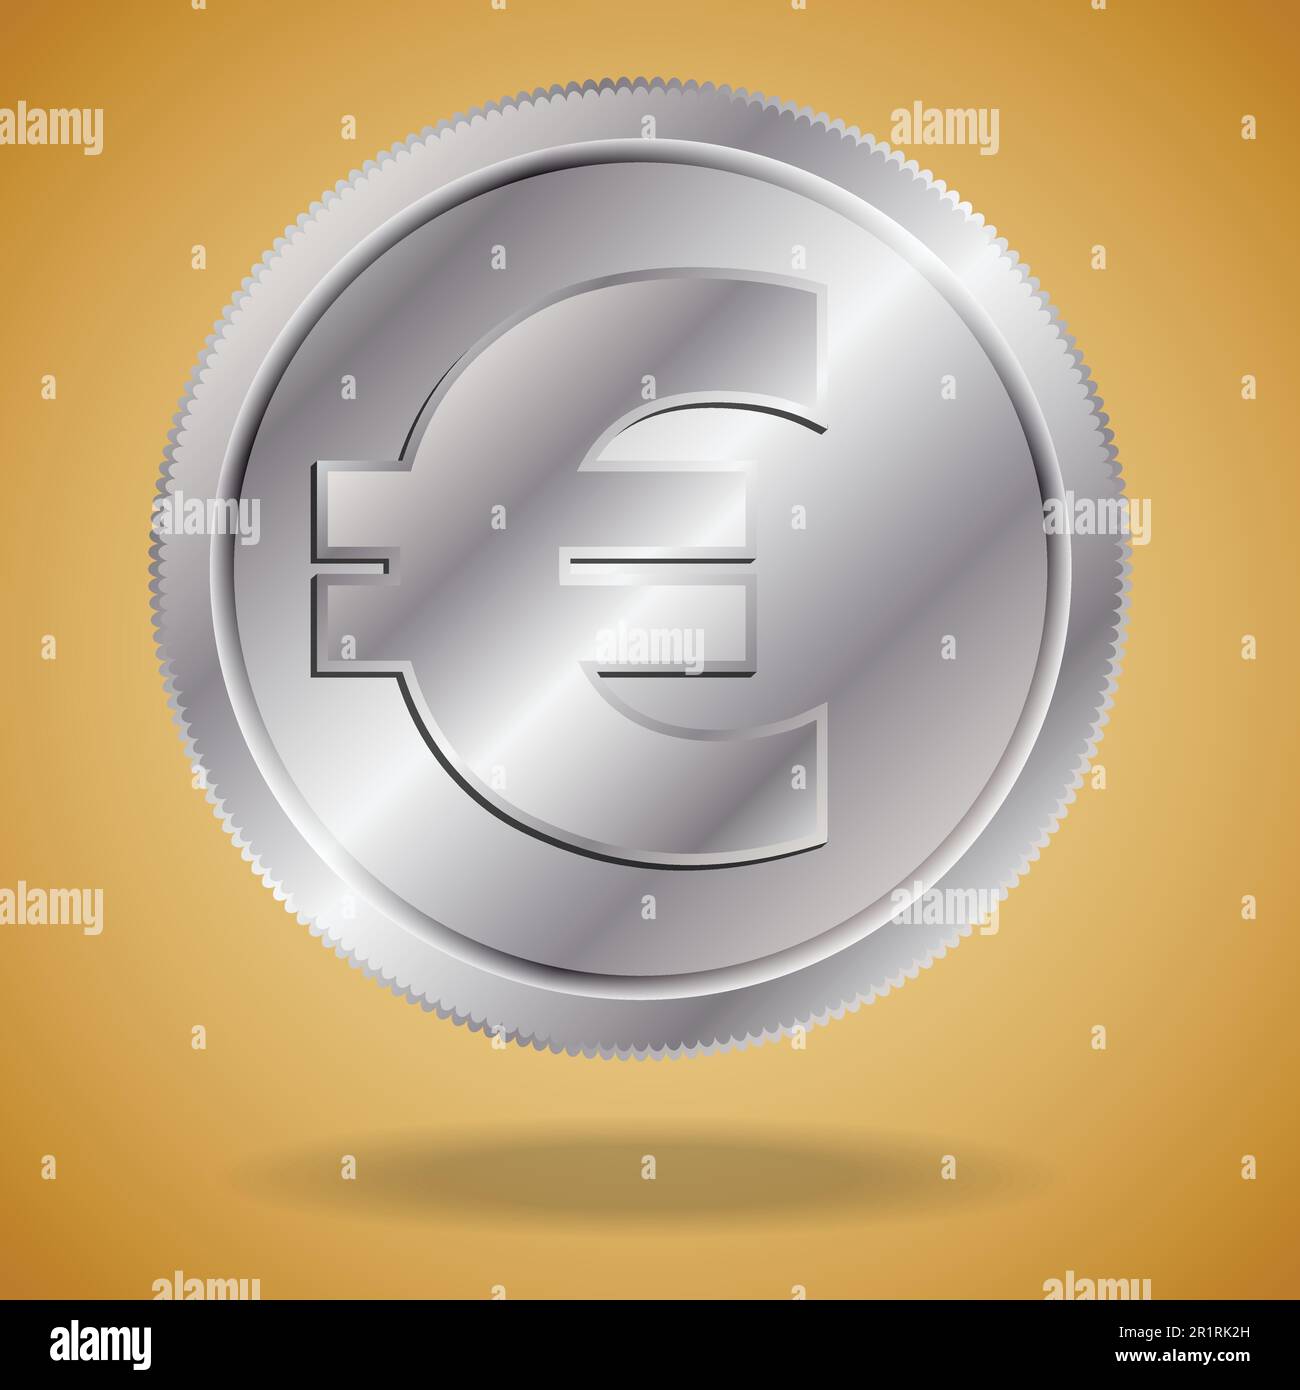 Concetto moderno con una moneta europea. Euro europeo d'argento con ombra su fondo dorato. Illustrazione Vettoriale